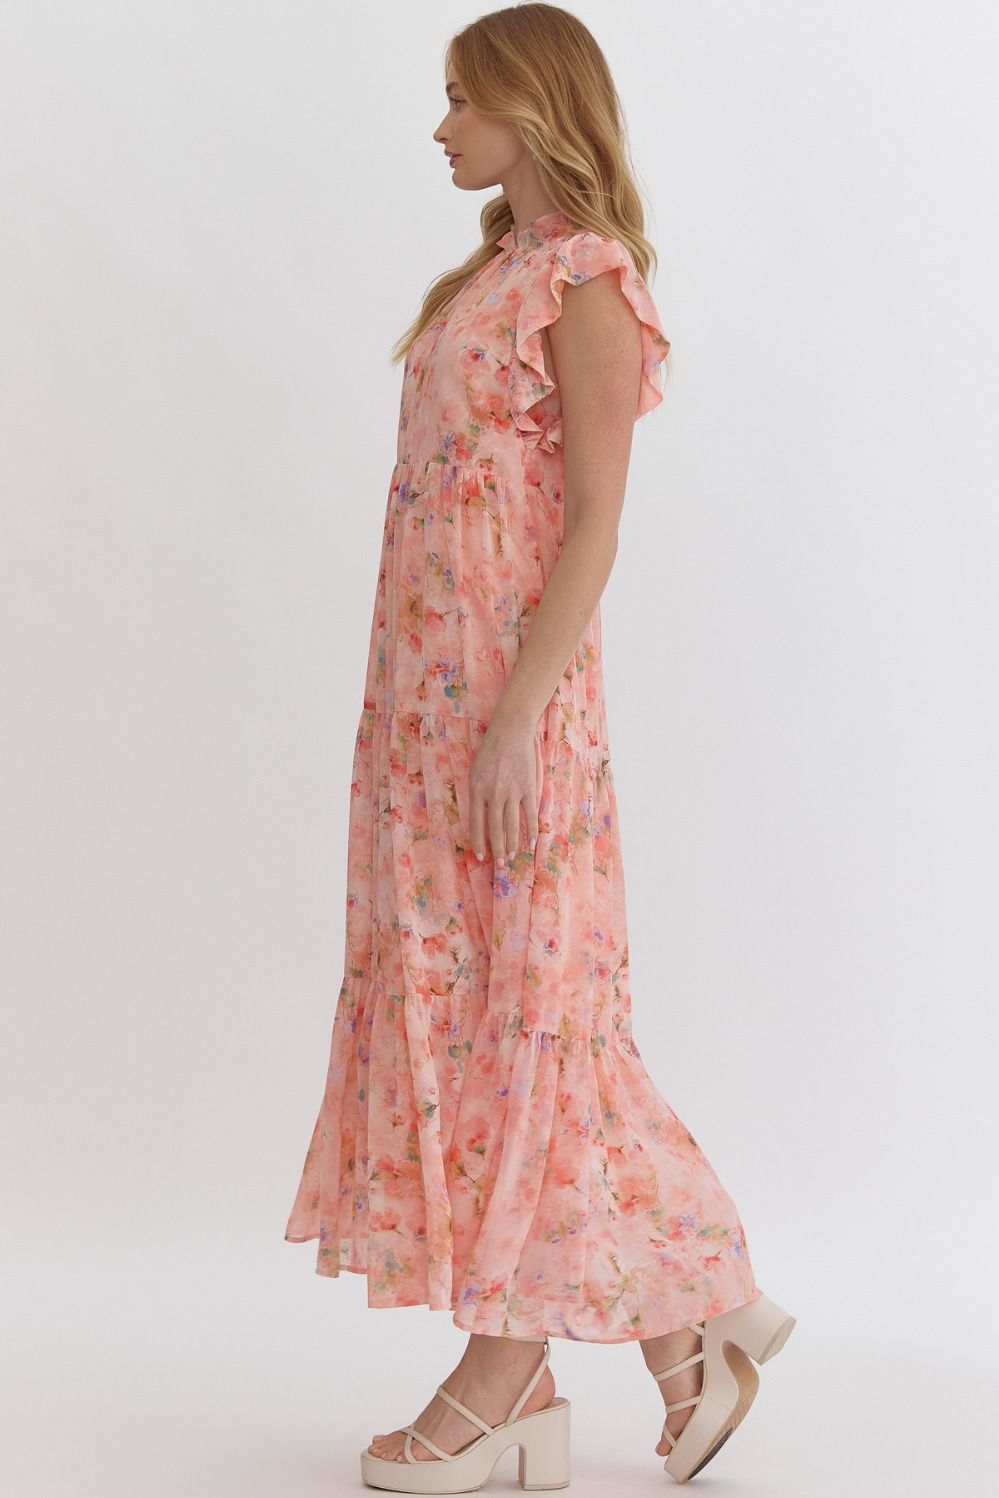 Braxton Floral Flutter Dress